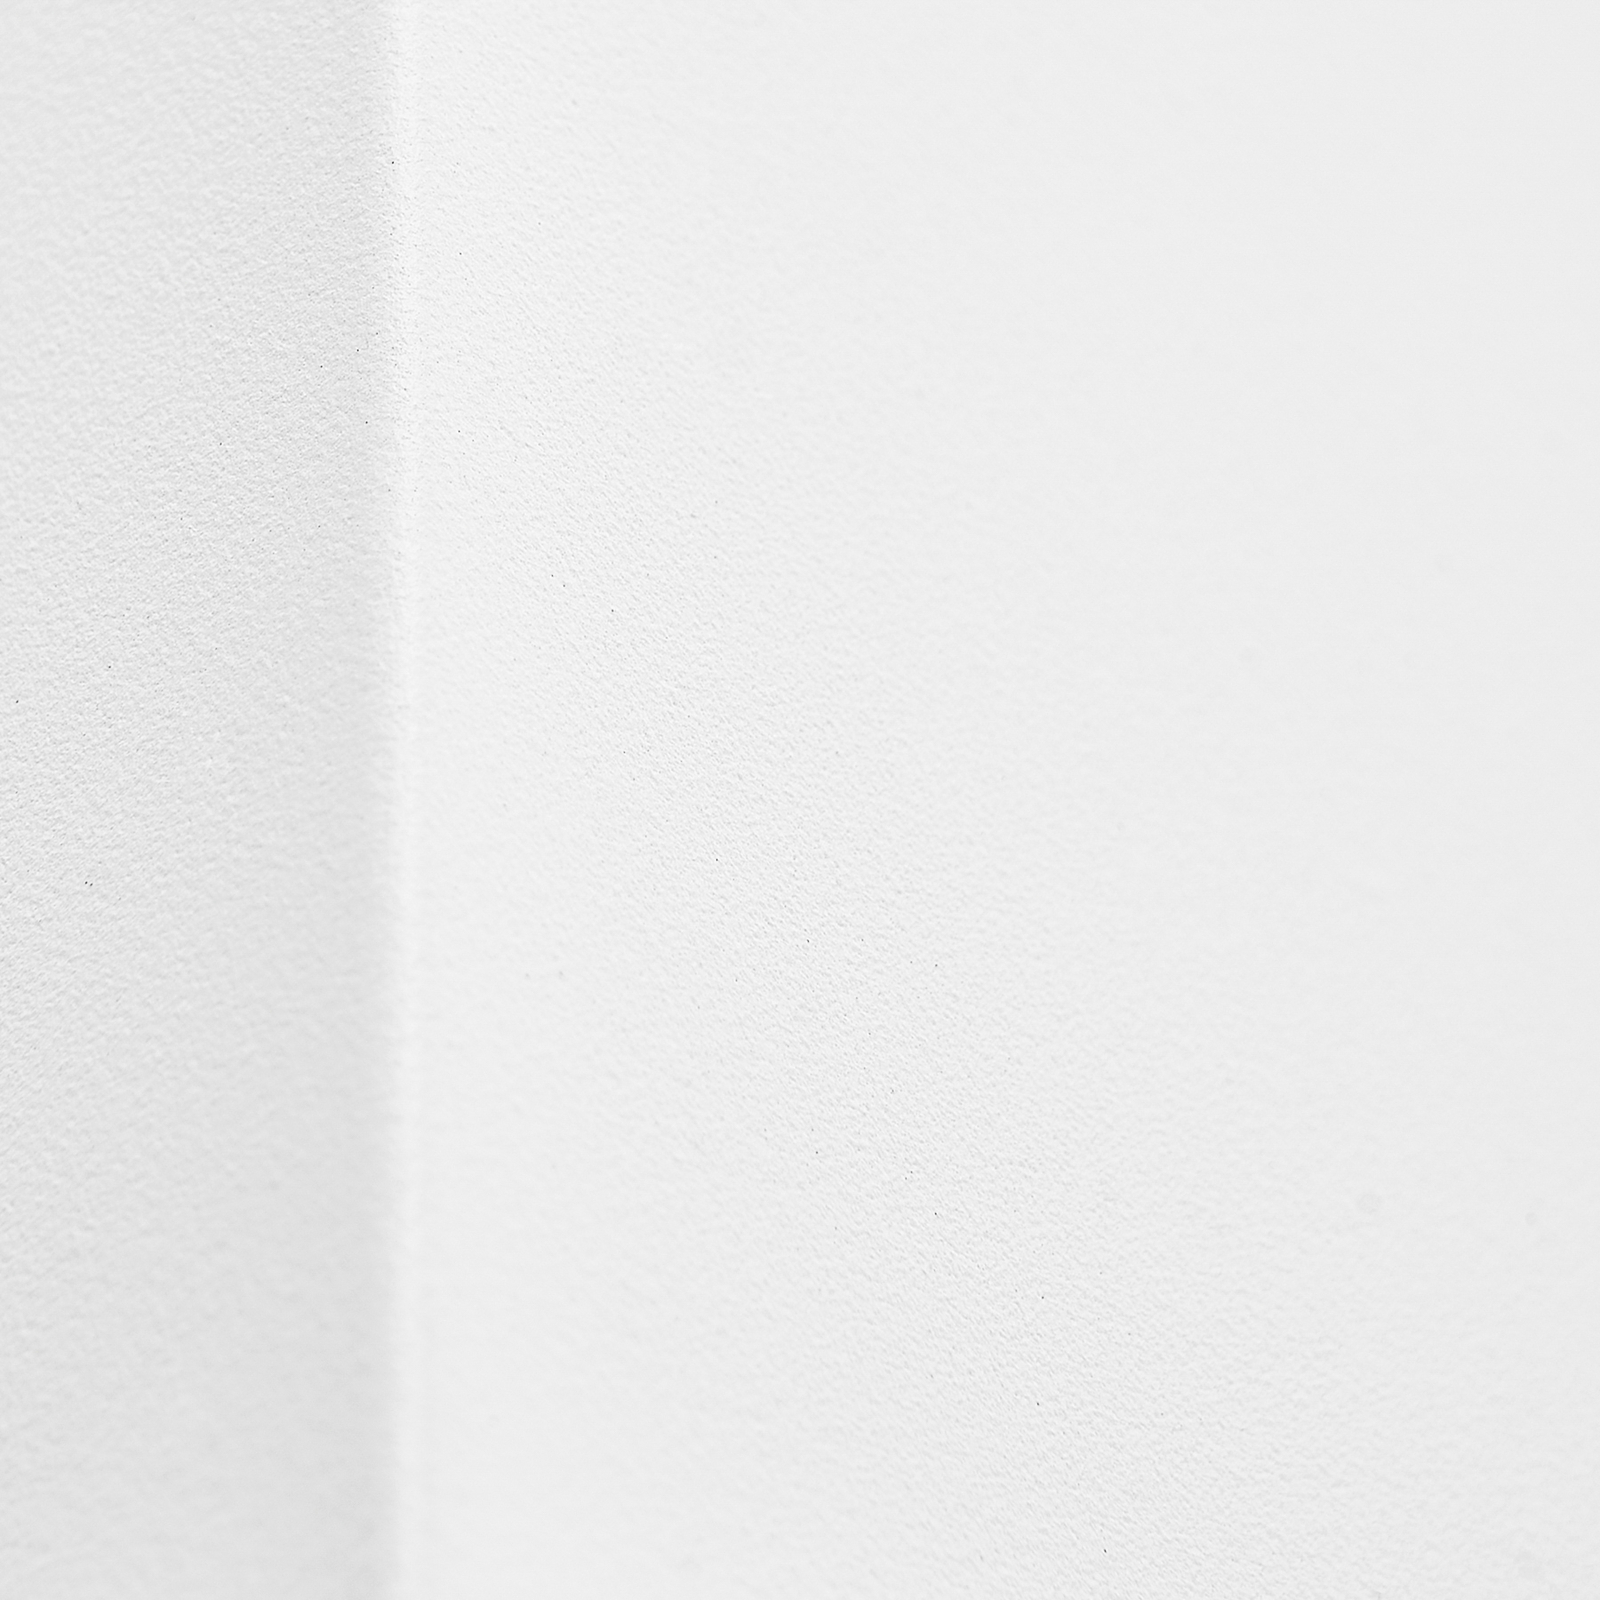 Prios kültéri fali lámpa Tetje, fehér, szögletes, 10 cm, 4 darabos szett